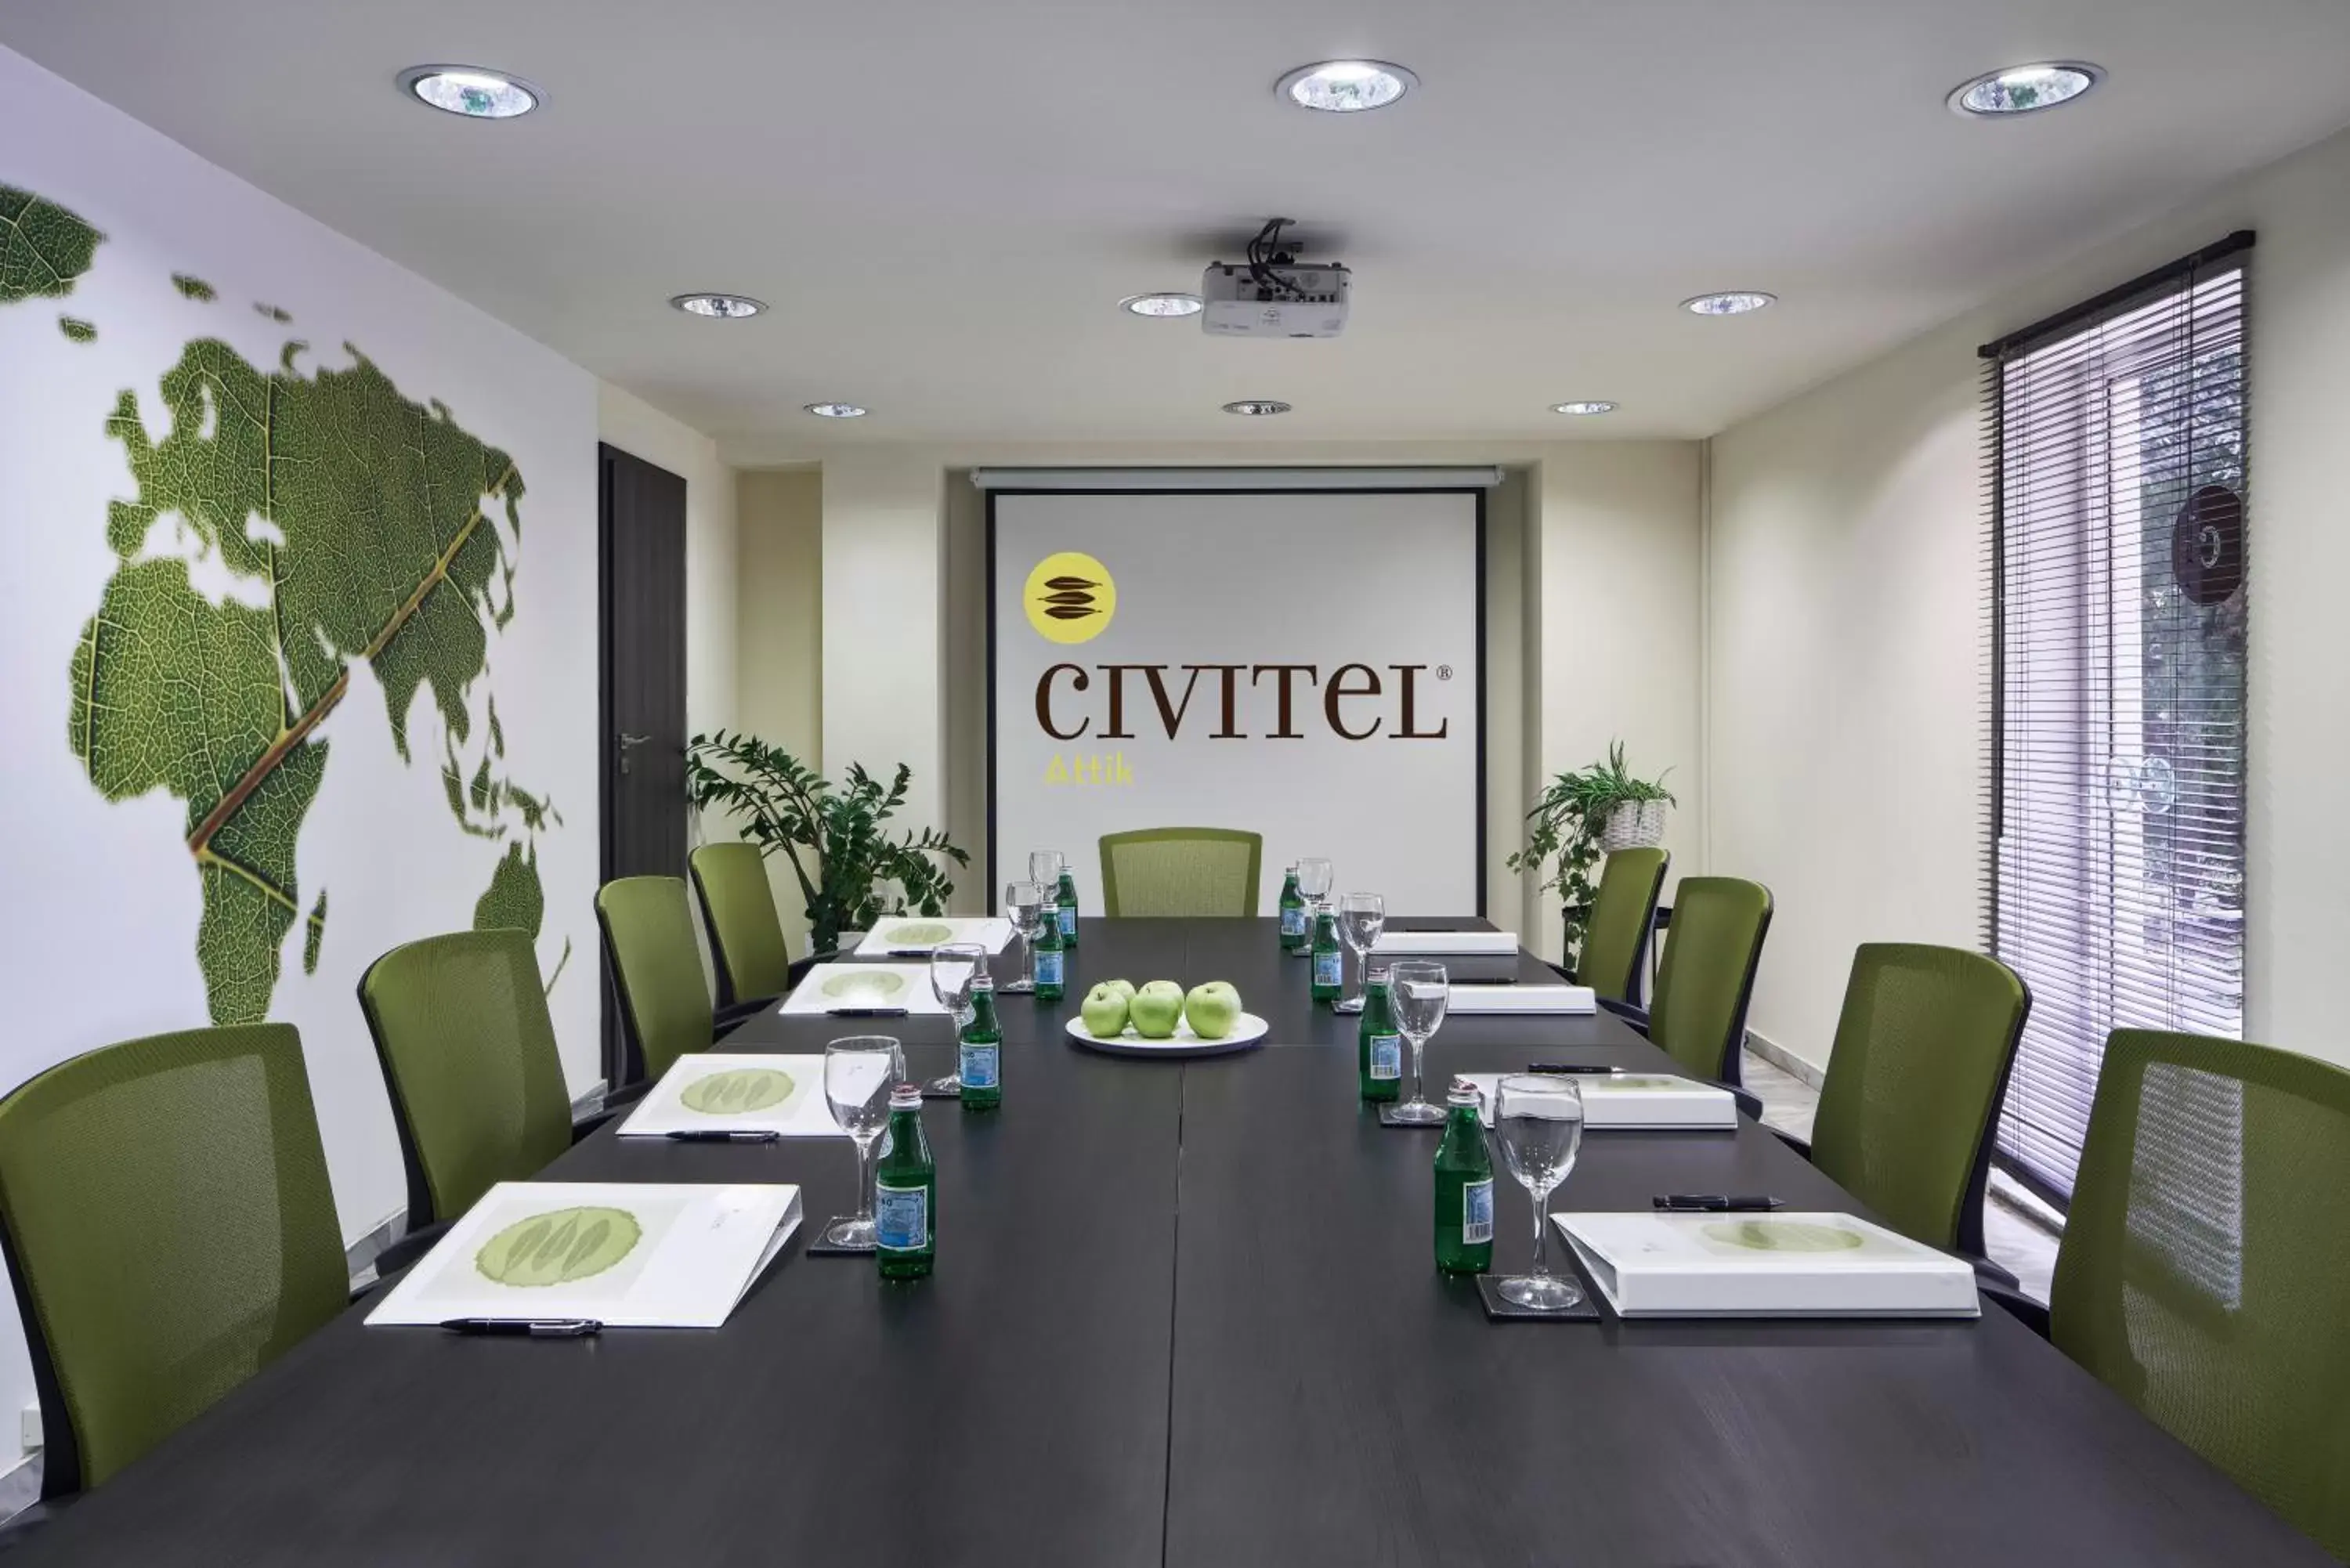 Business facilities in Civitel Attik Rooms & Suites